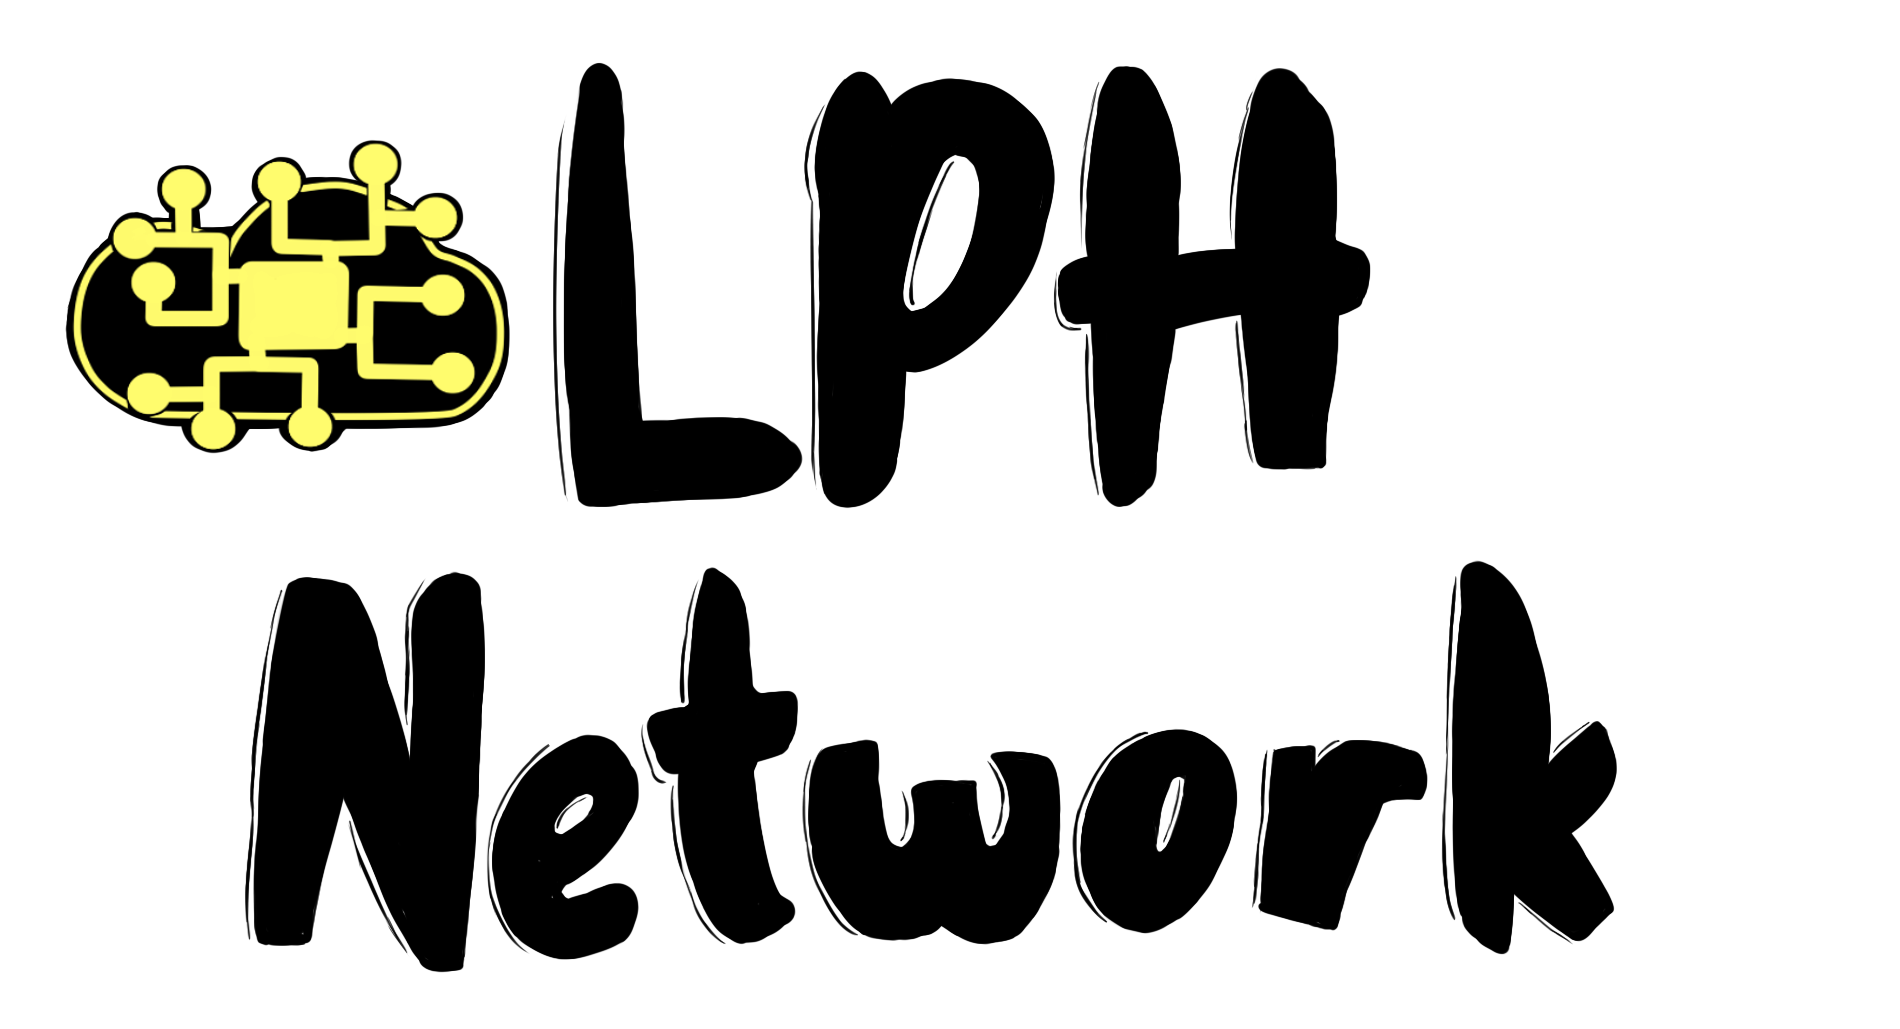 LPH Network